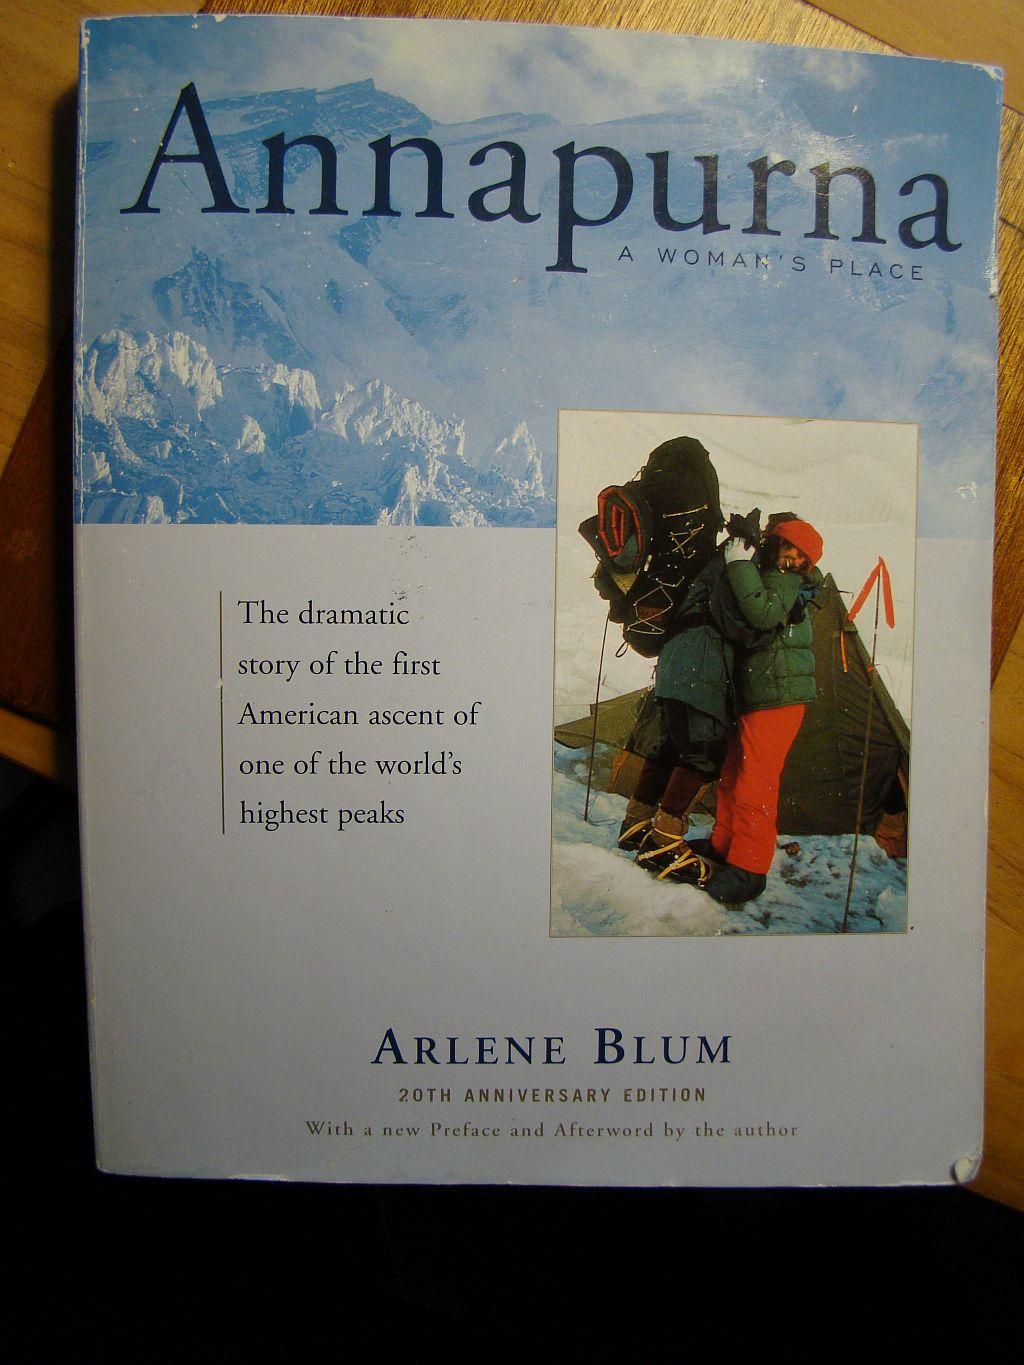 Annapurna by Arlene Blum